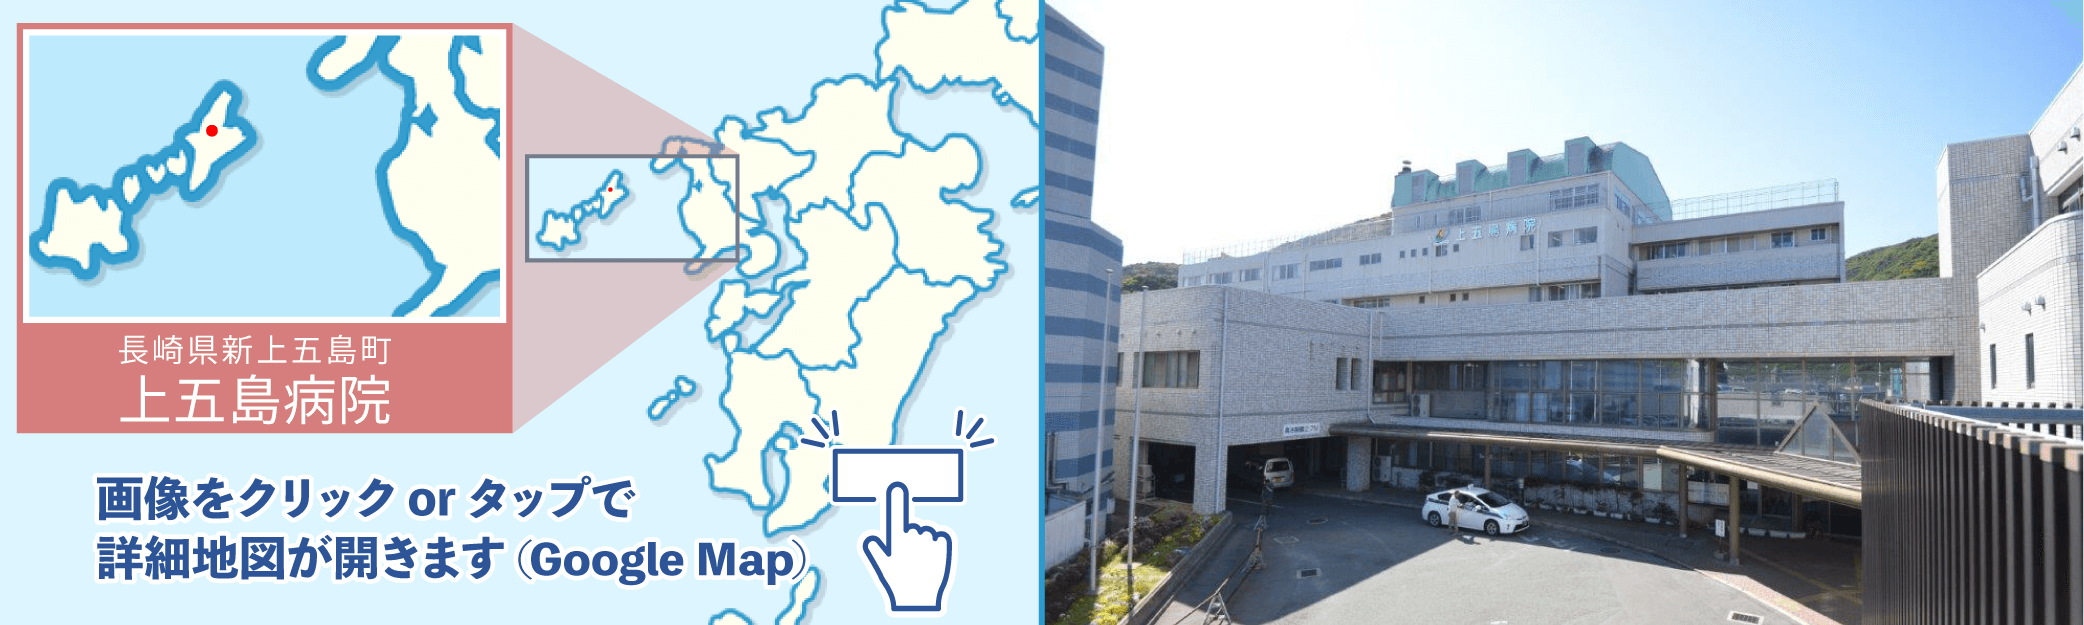 上五島病院地図・外観写真※クリックでGoogleMapが開きます